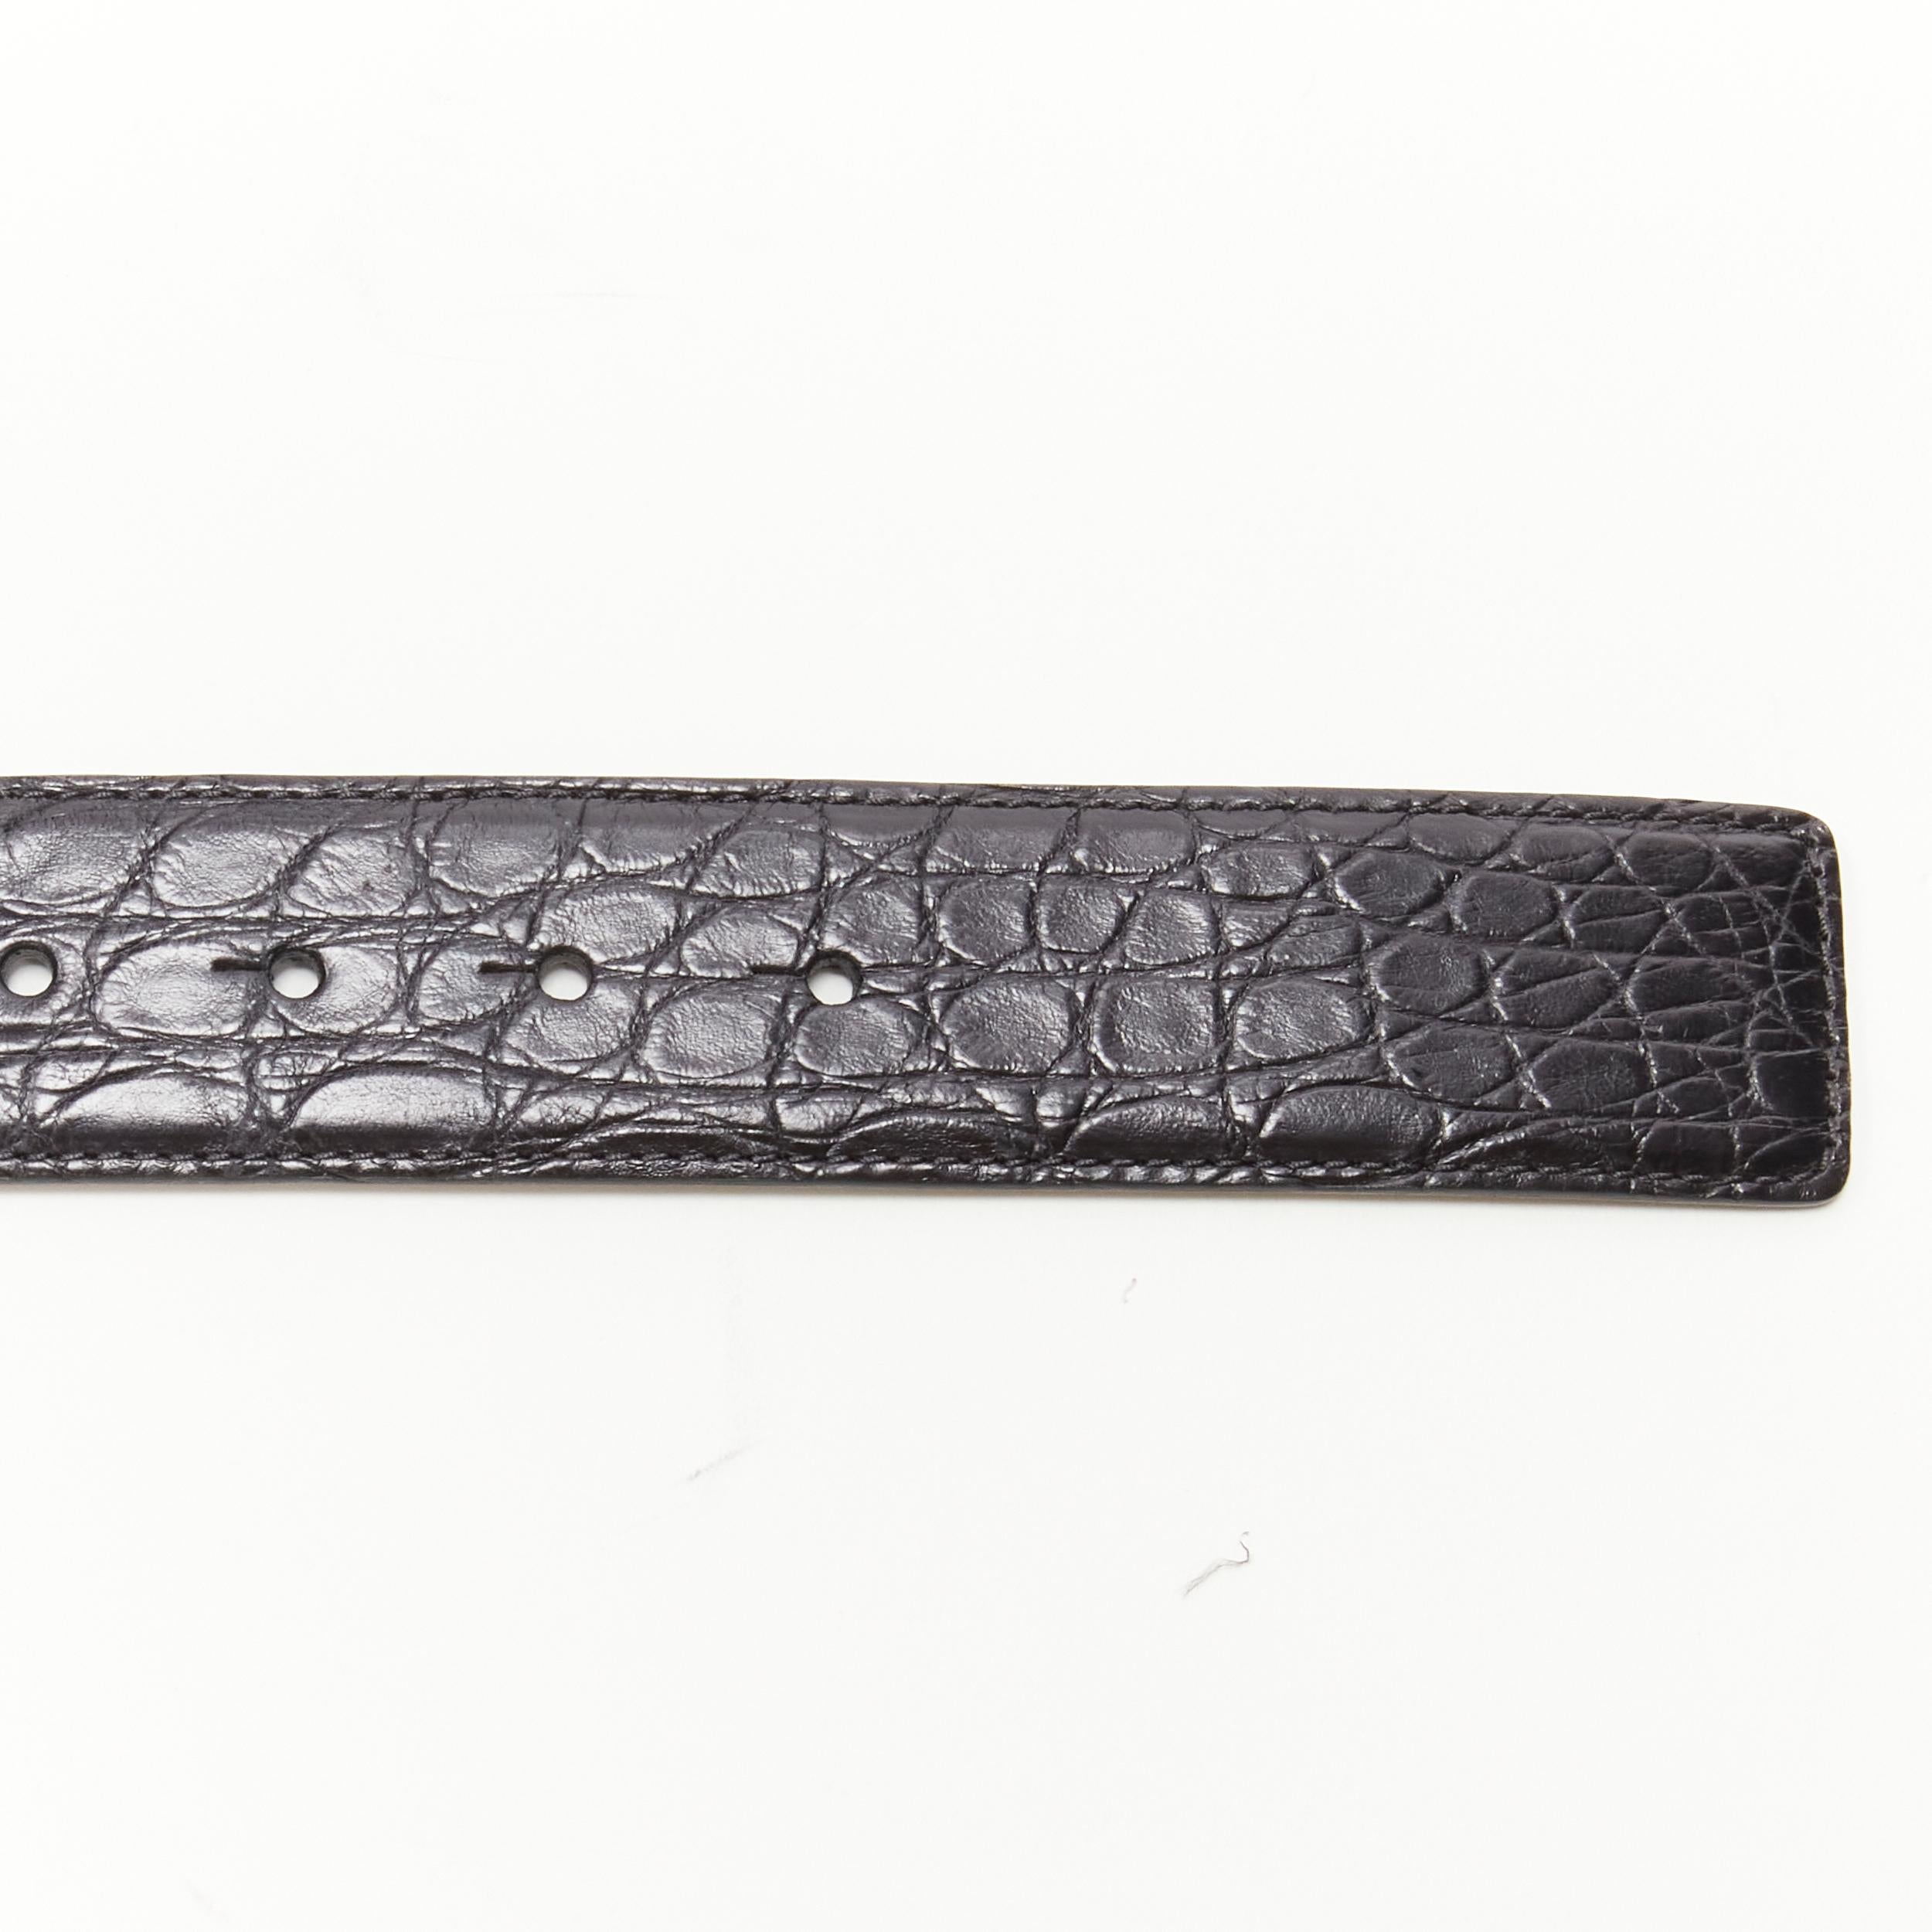 new VERSACE $1200 La Medusa gold buckle black croc leather belt 95cm 36-40